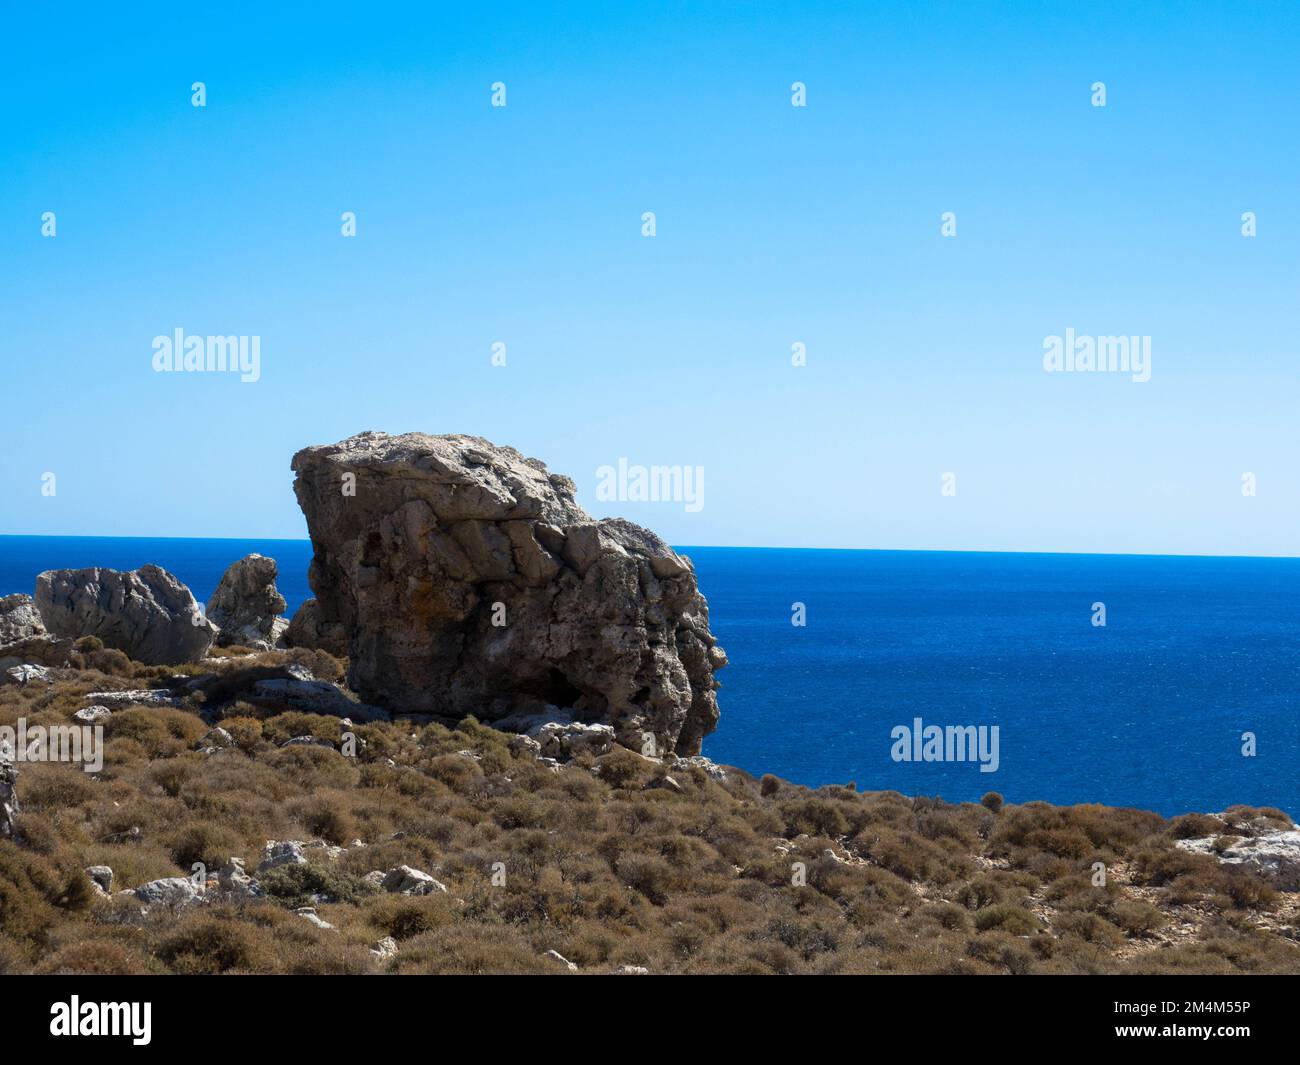 Vue panoramique sur la mer Méditerranée sur la côte rocheuse. Chaîne de montagnes avec eau turquoise. Situé près de Stegna, Archangelos, Rhodes, Grèce Banque D'Images